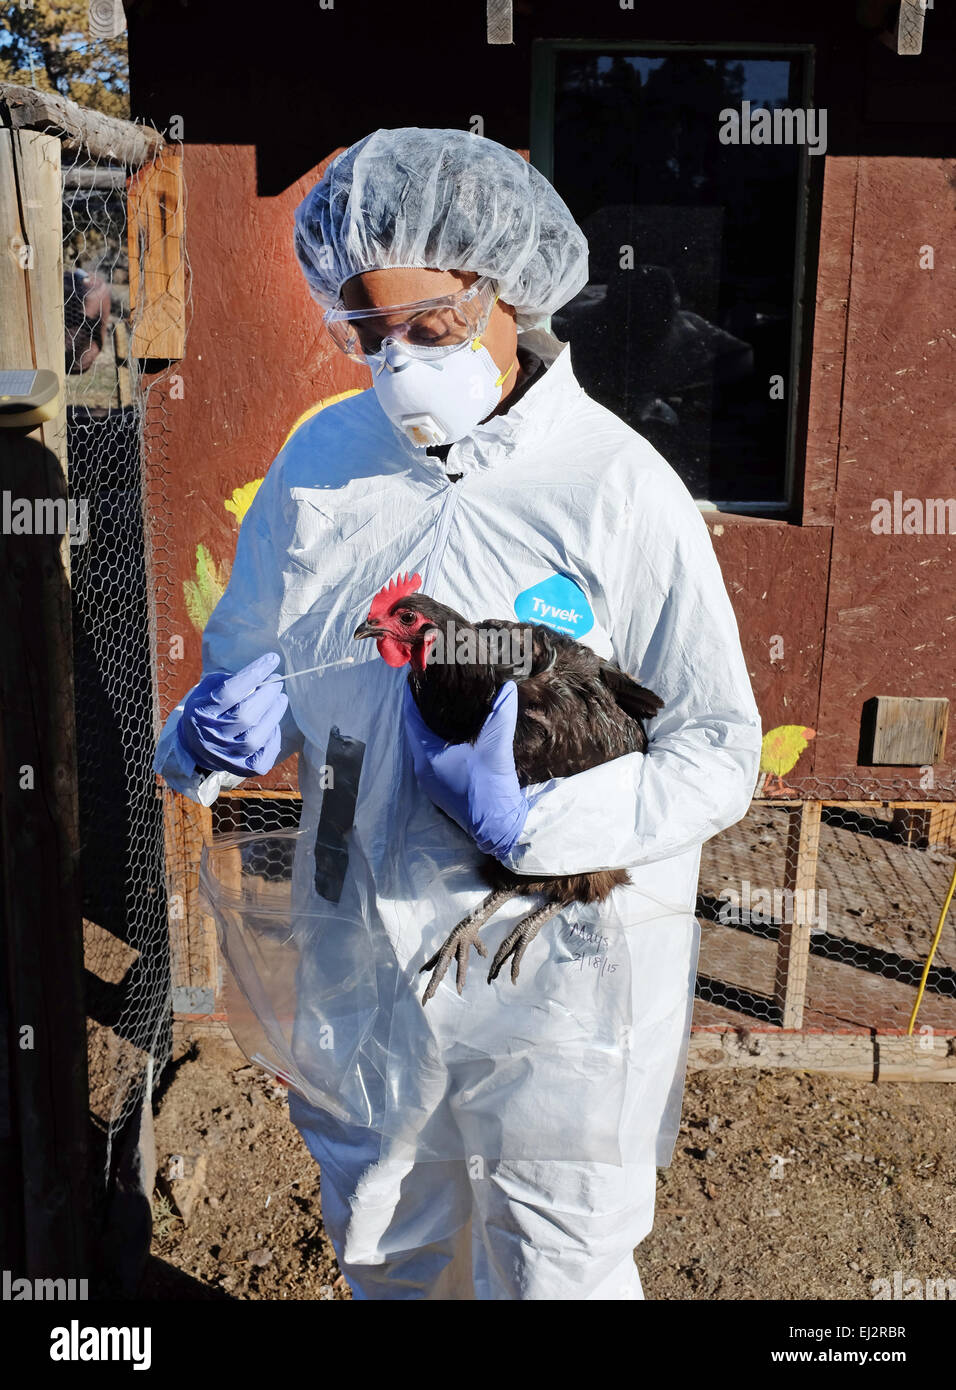 Vestito con una tuta di rischio biologico, un veterinario degli Stati Uniti del dipartimento dell'Agricoltura prende un campione di saliva di pollo a Foto Stock